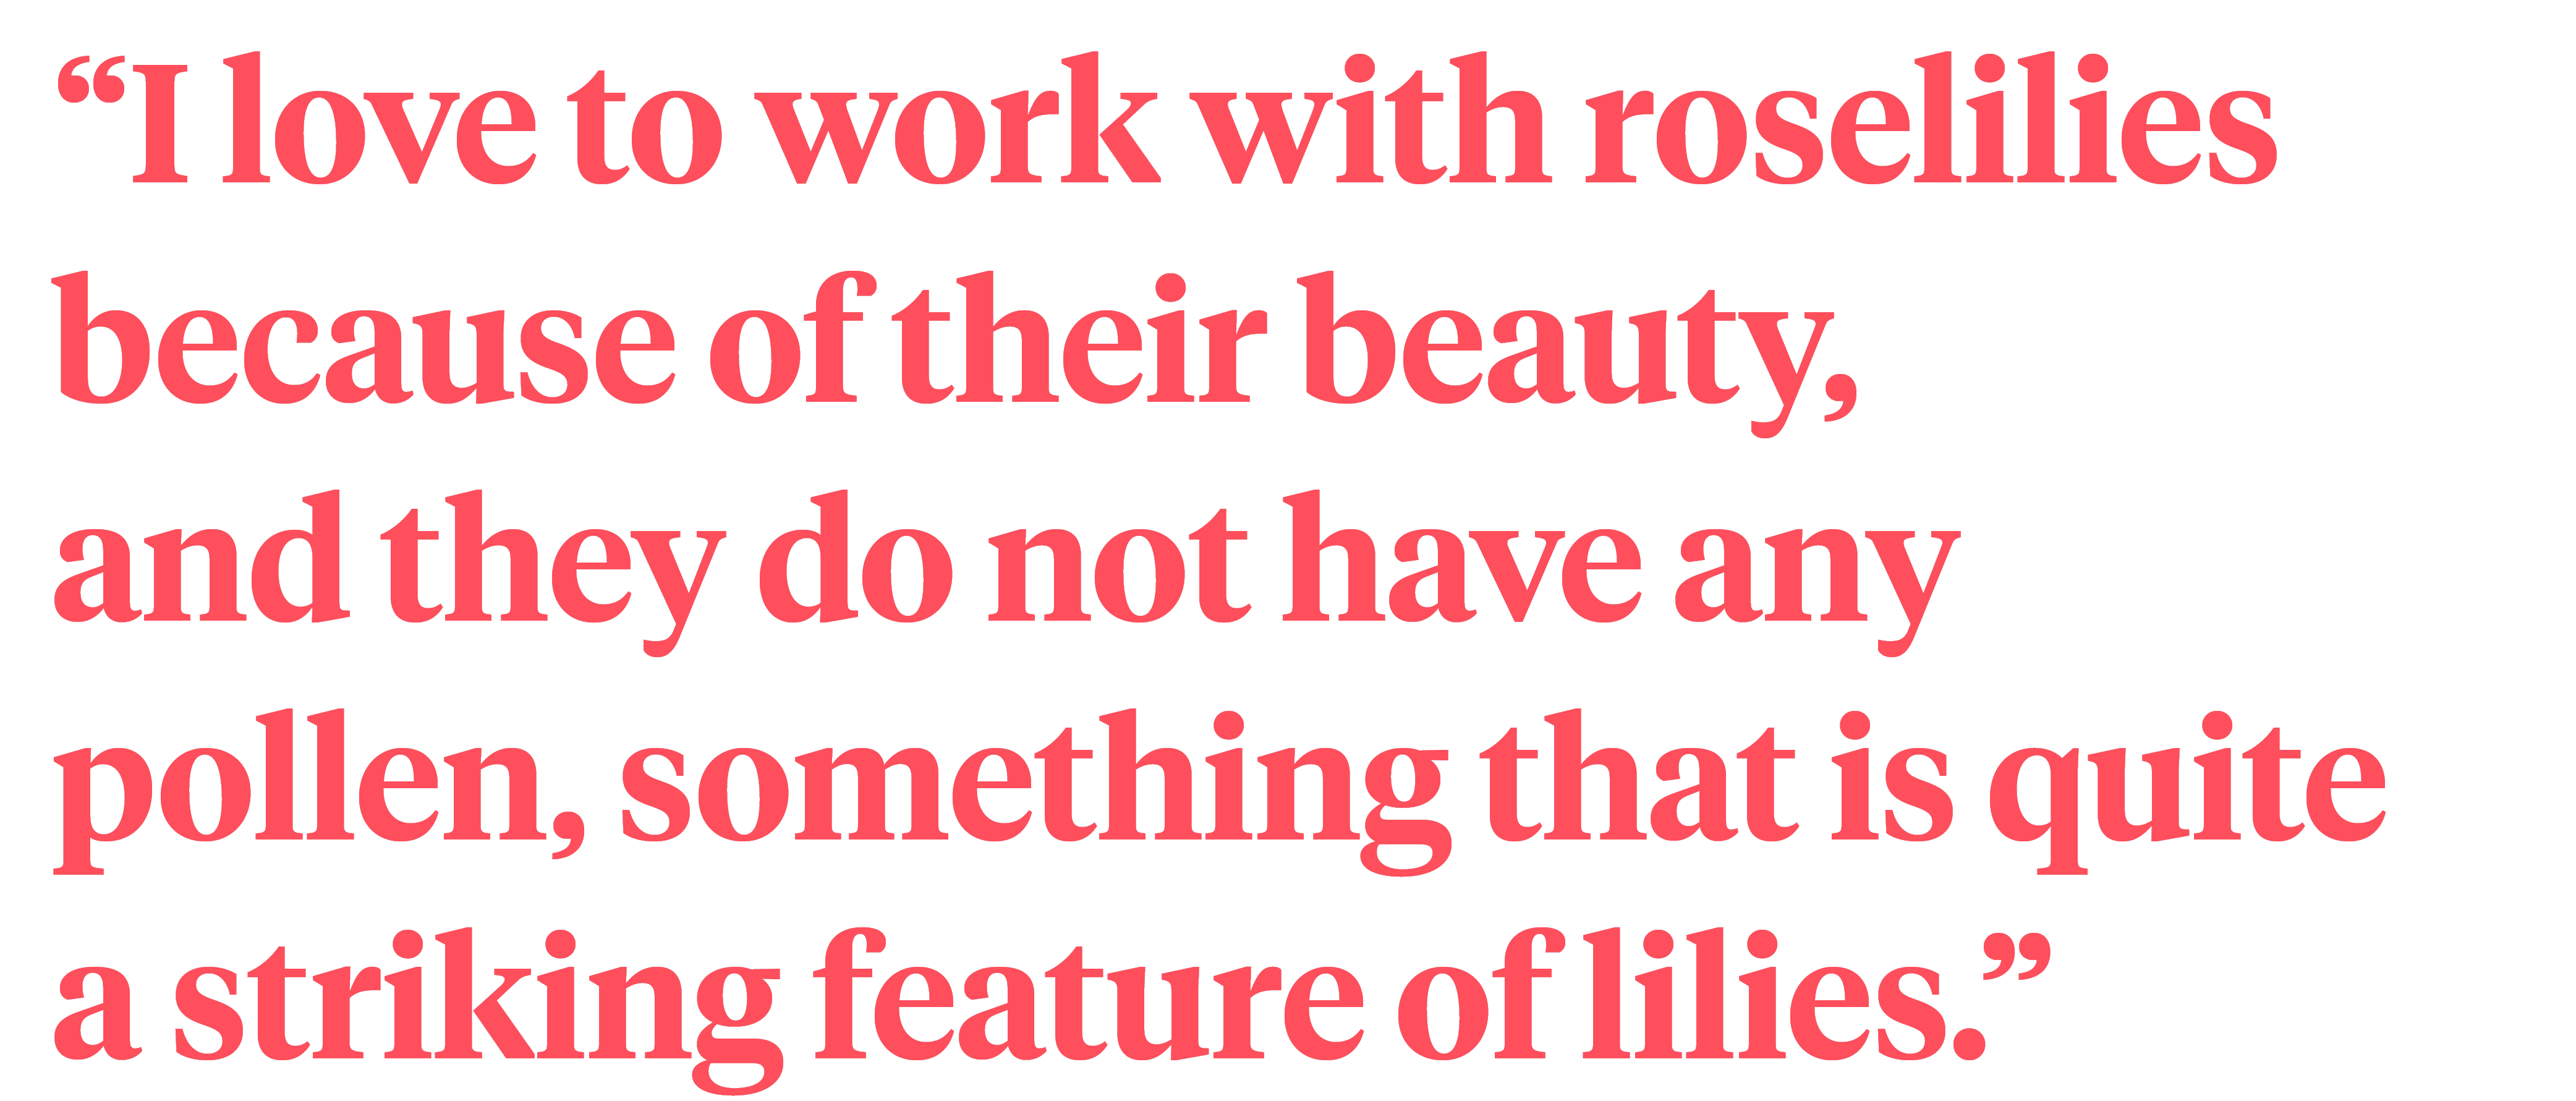 Roselily - Dorien van den Berg quote on Thursd